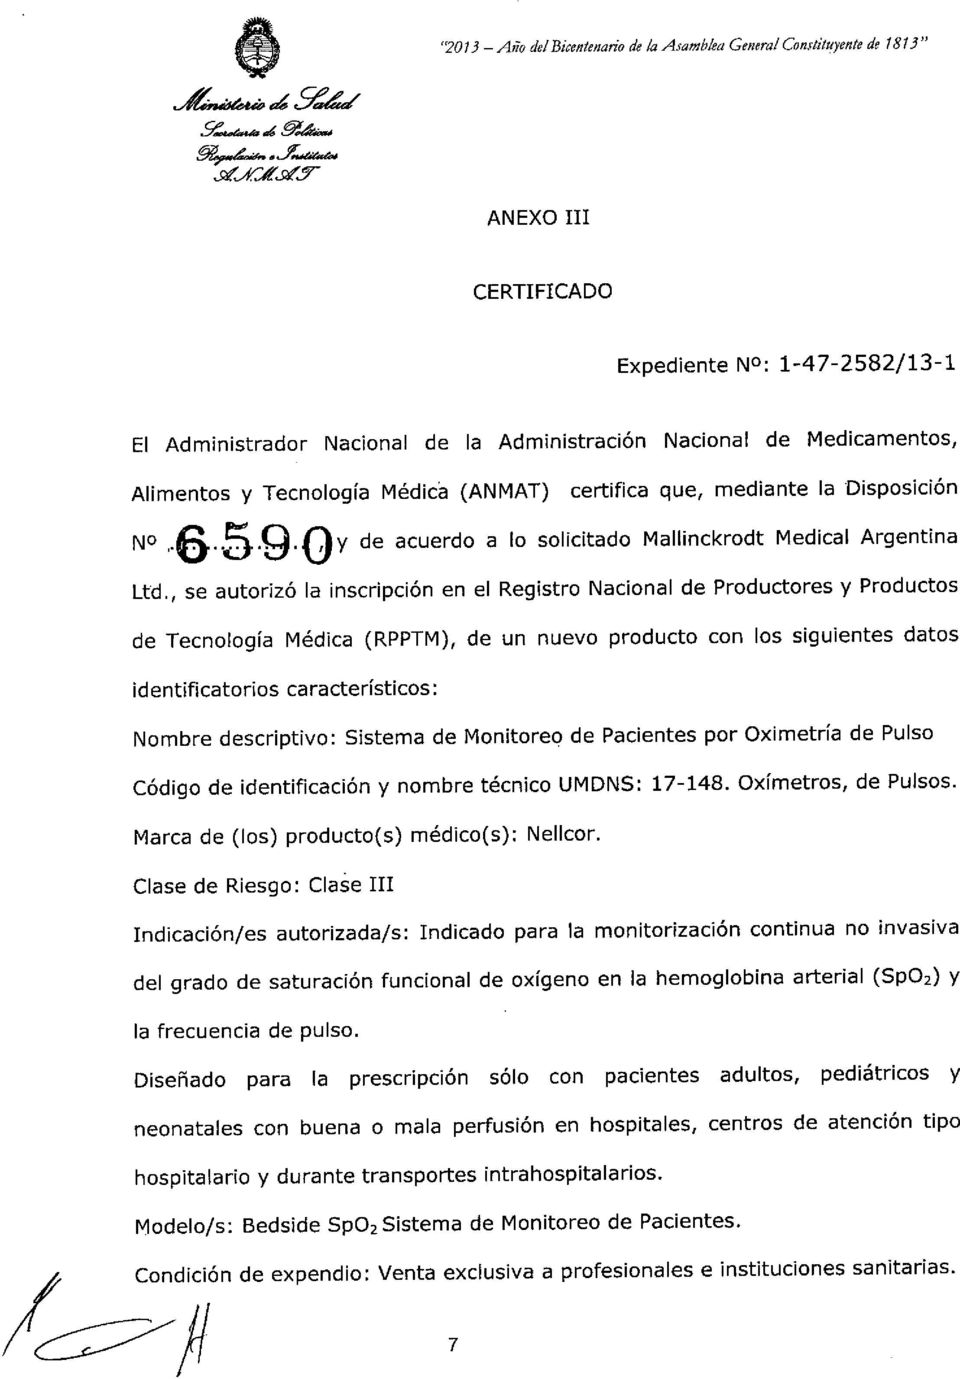 Medicamentos, Alimentos y Tecnología Médica (ANMAT) certifica que, mediante la Disposición N0,.6..5.9.0y de acuerdo a lo solicitado Mallinckrodt Medical Argentina Ltd.